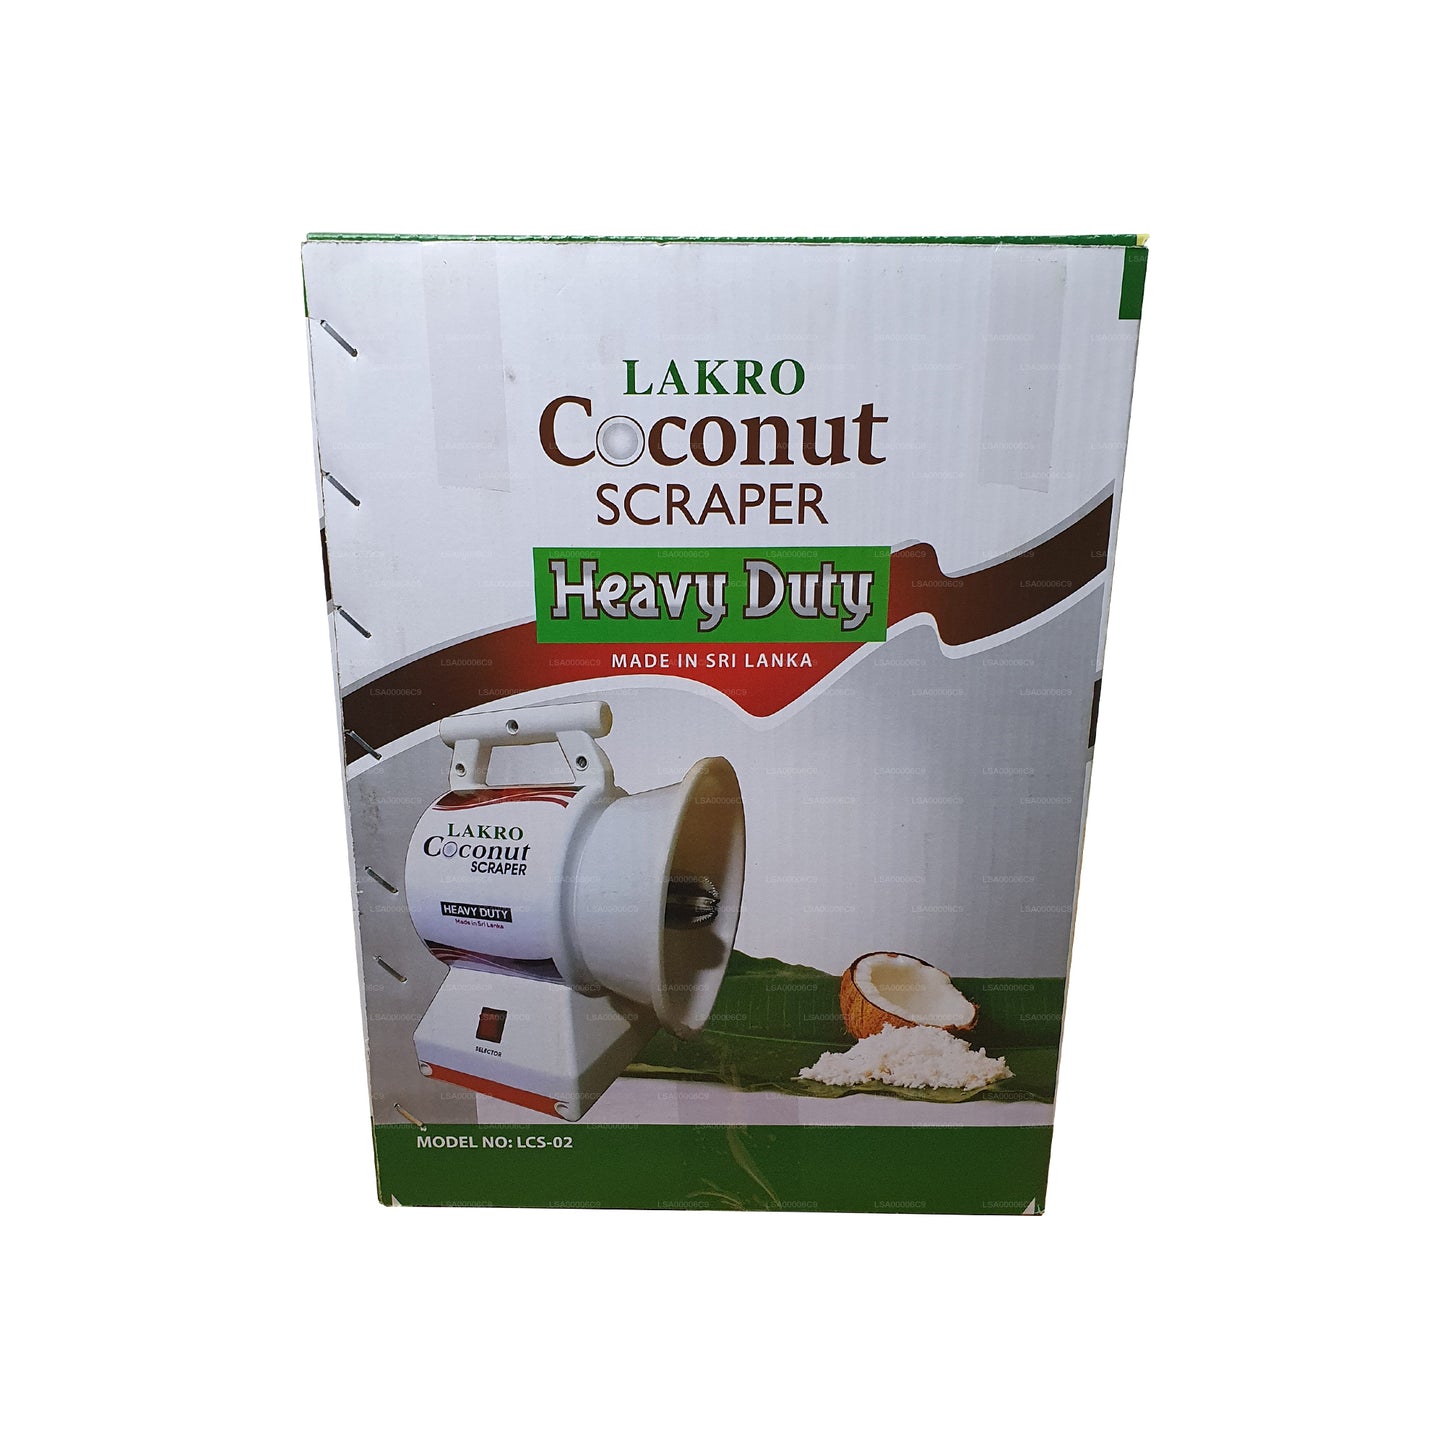 Lakro kokosschrapermachine voor zwaar gebruik (LCS-007)